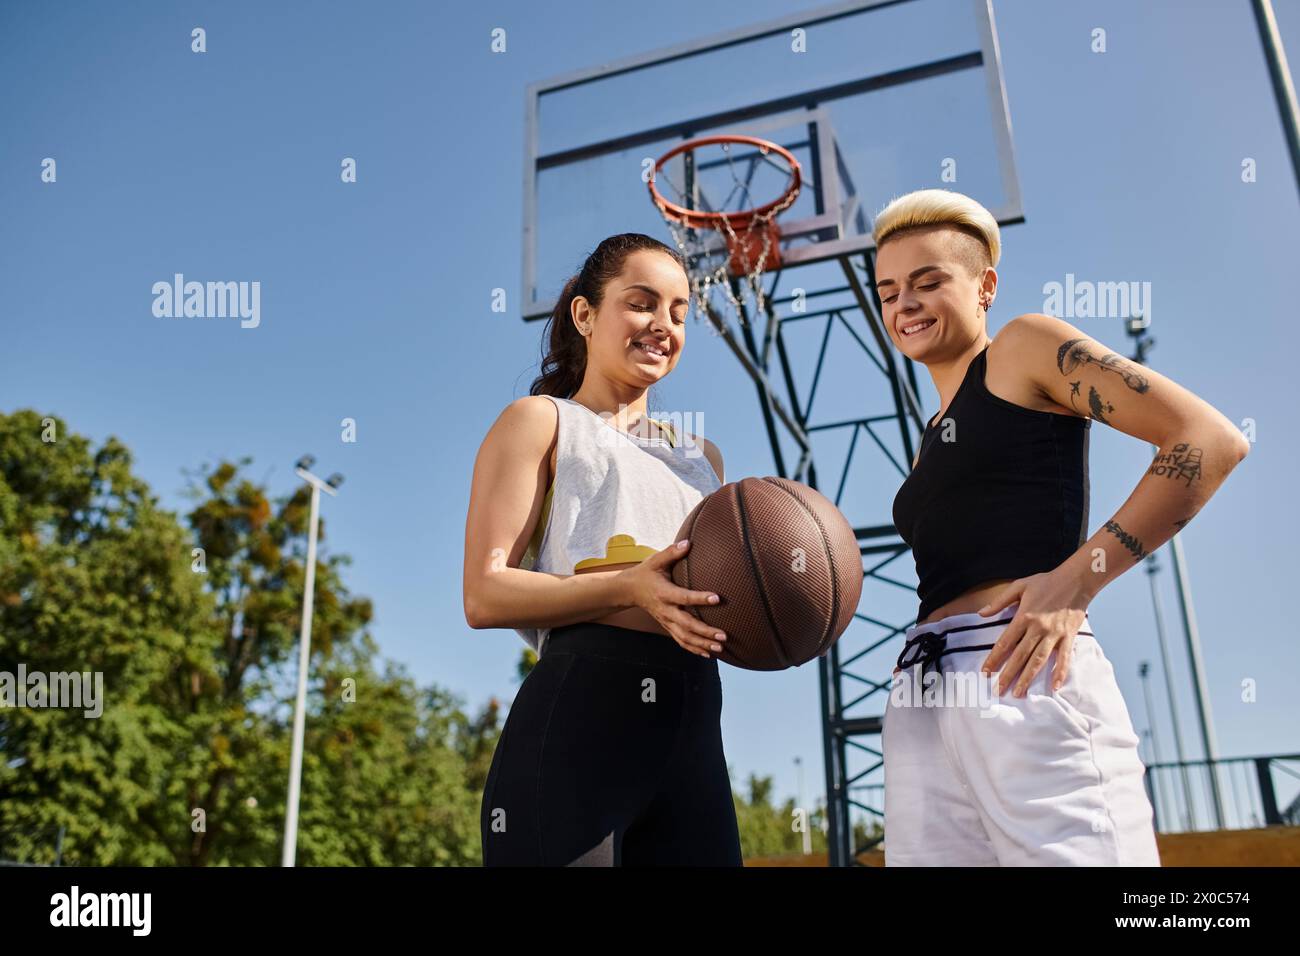 Deux jeunes femmes athlétiques dribblant un basket-ball en plein air par une journée ensoleillée, profitant d'un match amical ensemble. Banque D'Images